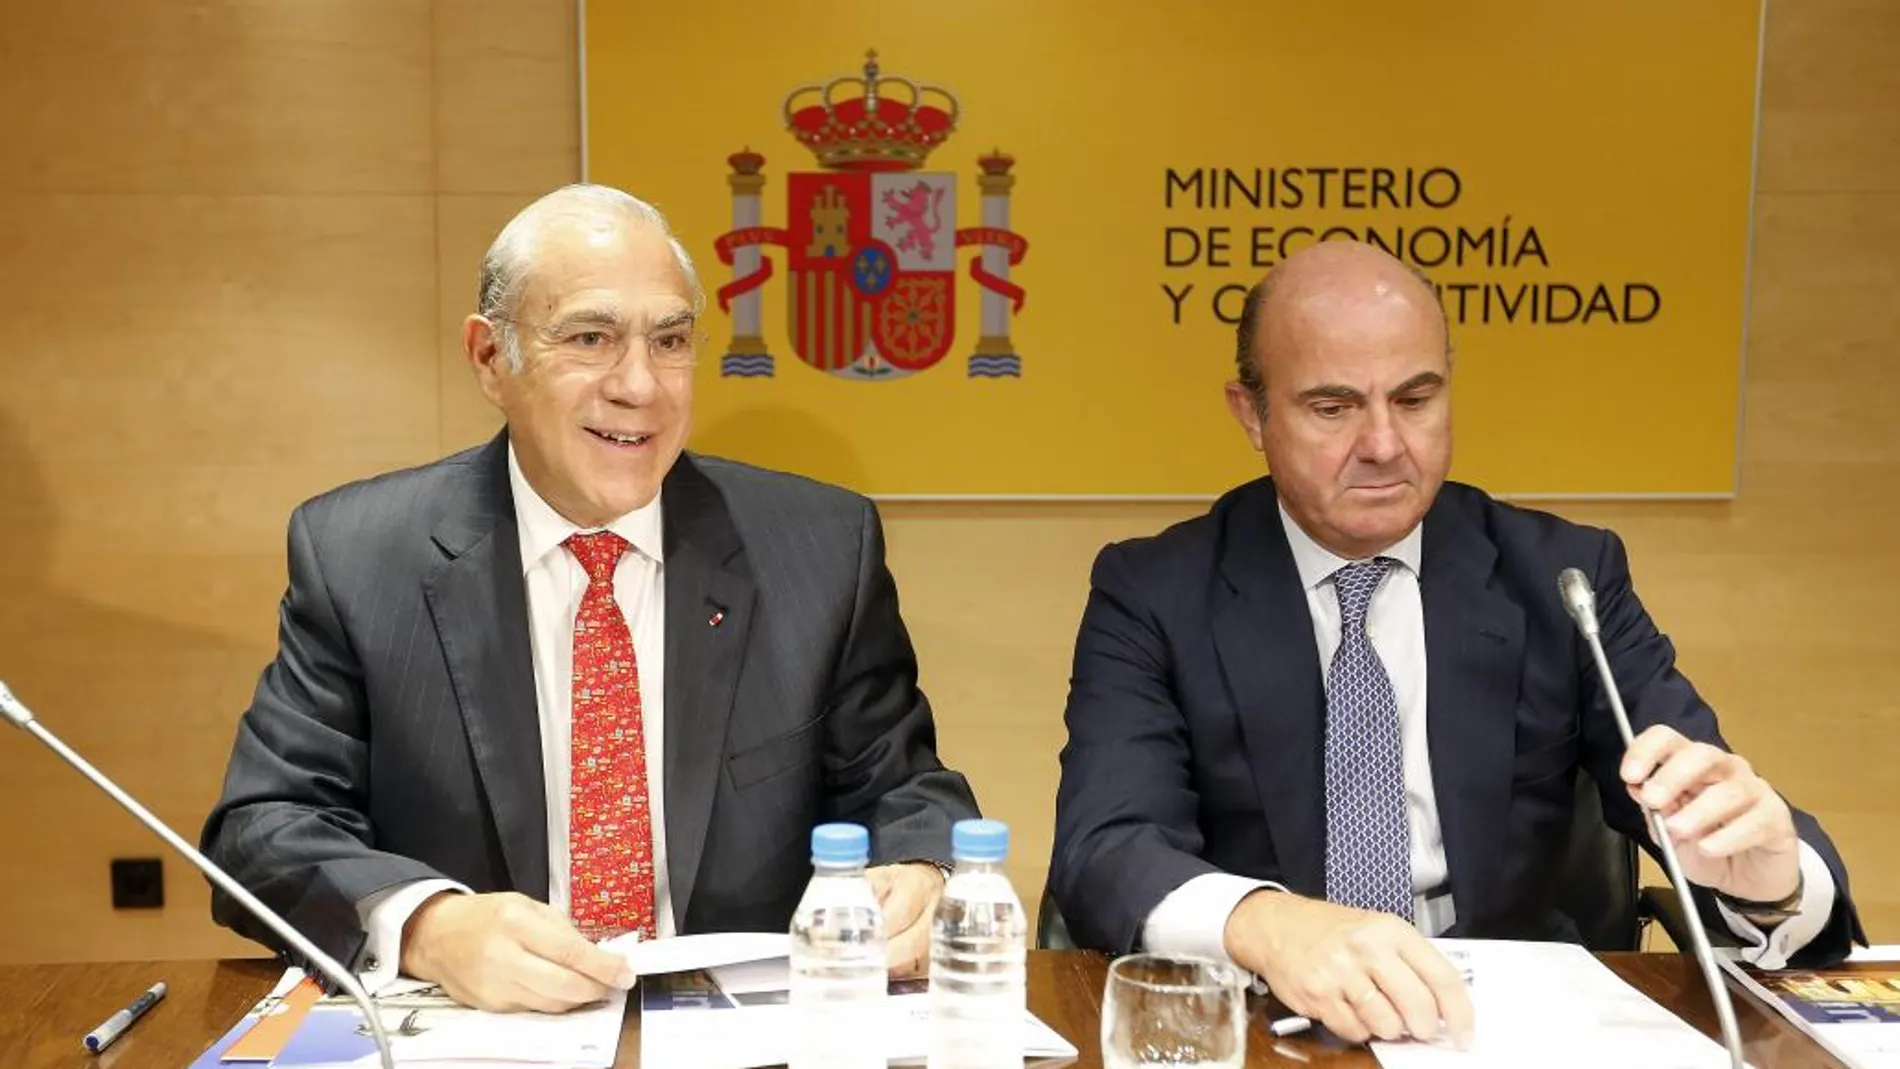 El secretario general de la OCDE, Ángel Gurría, junto a Luis de Guindos, en una imagen de 2014